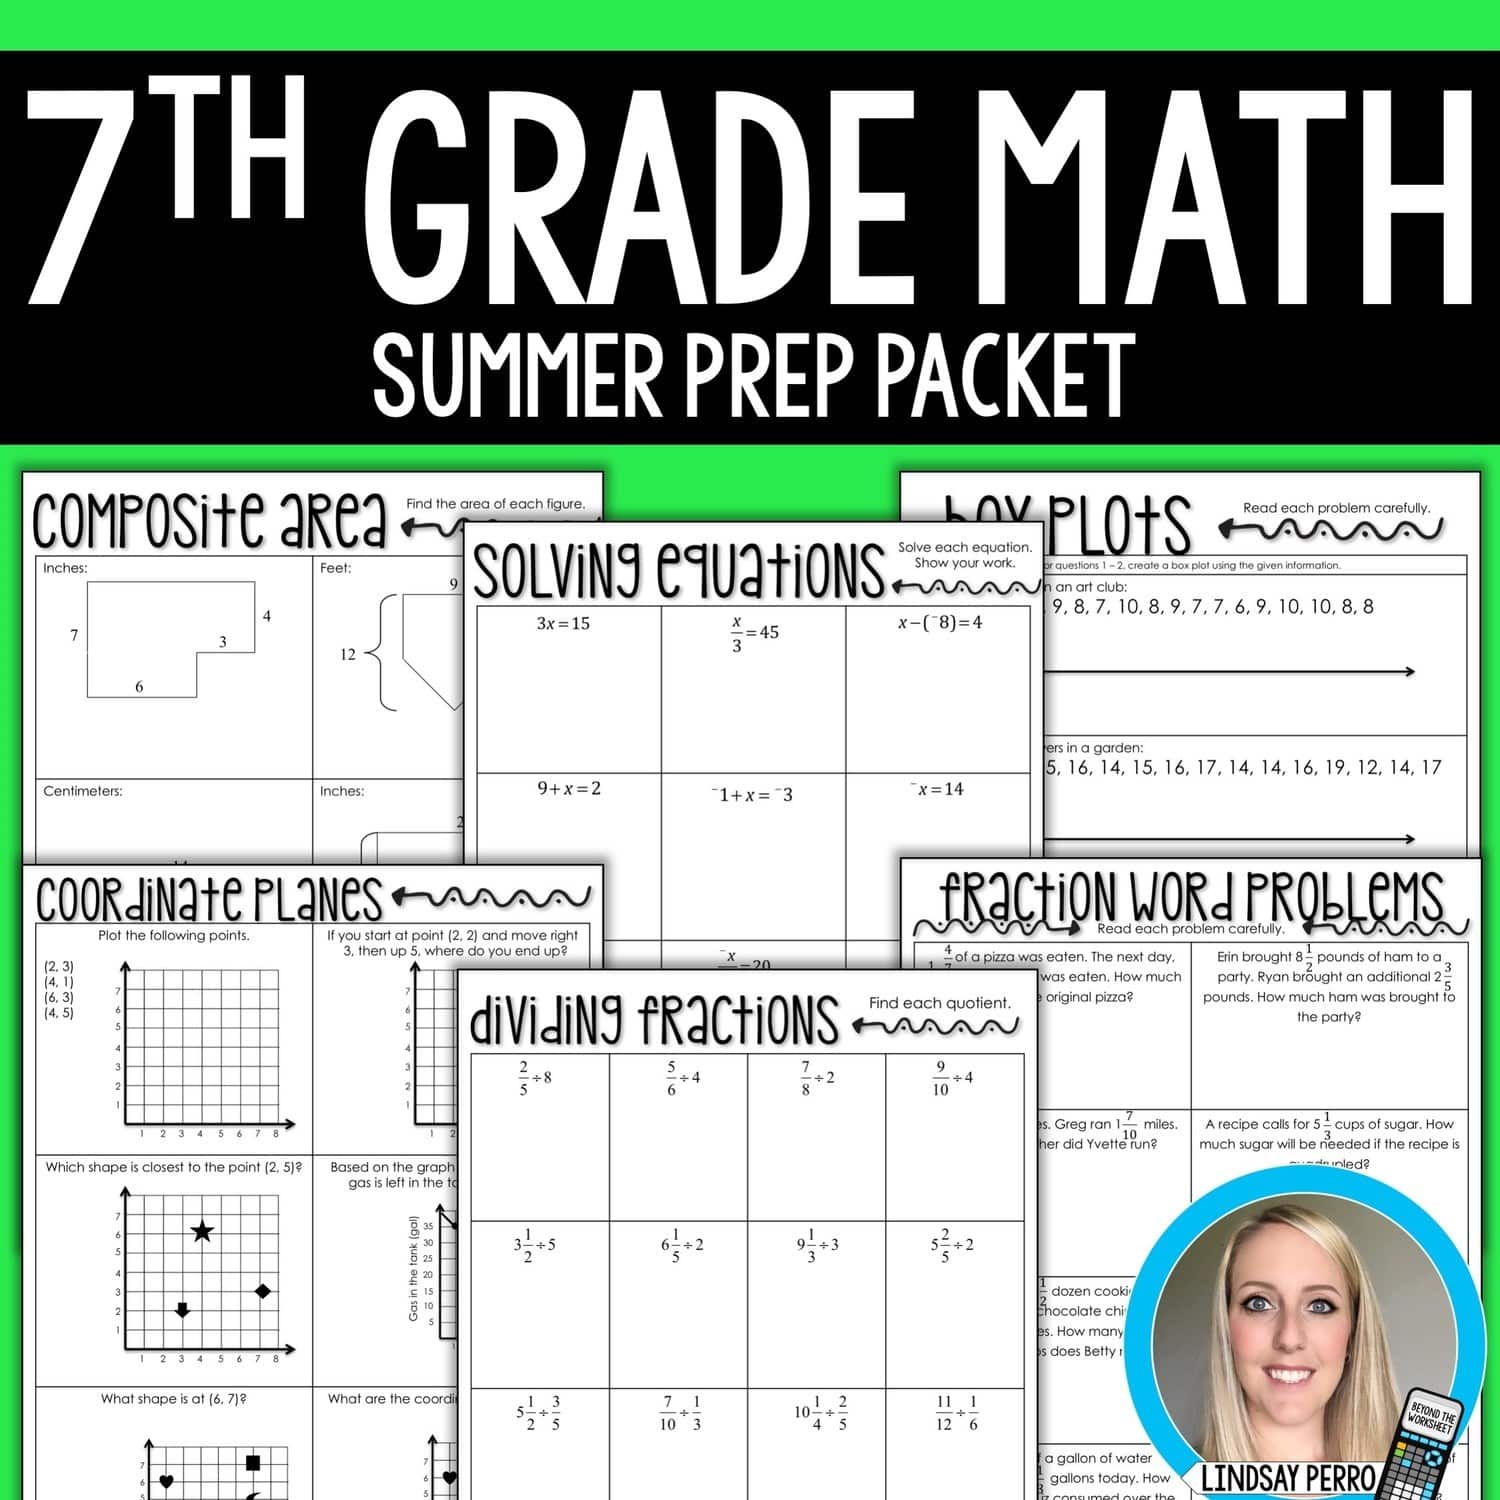 7th Grade Math Summer Prep Packet